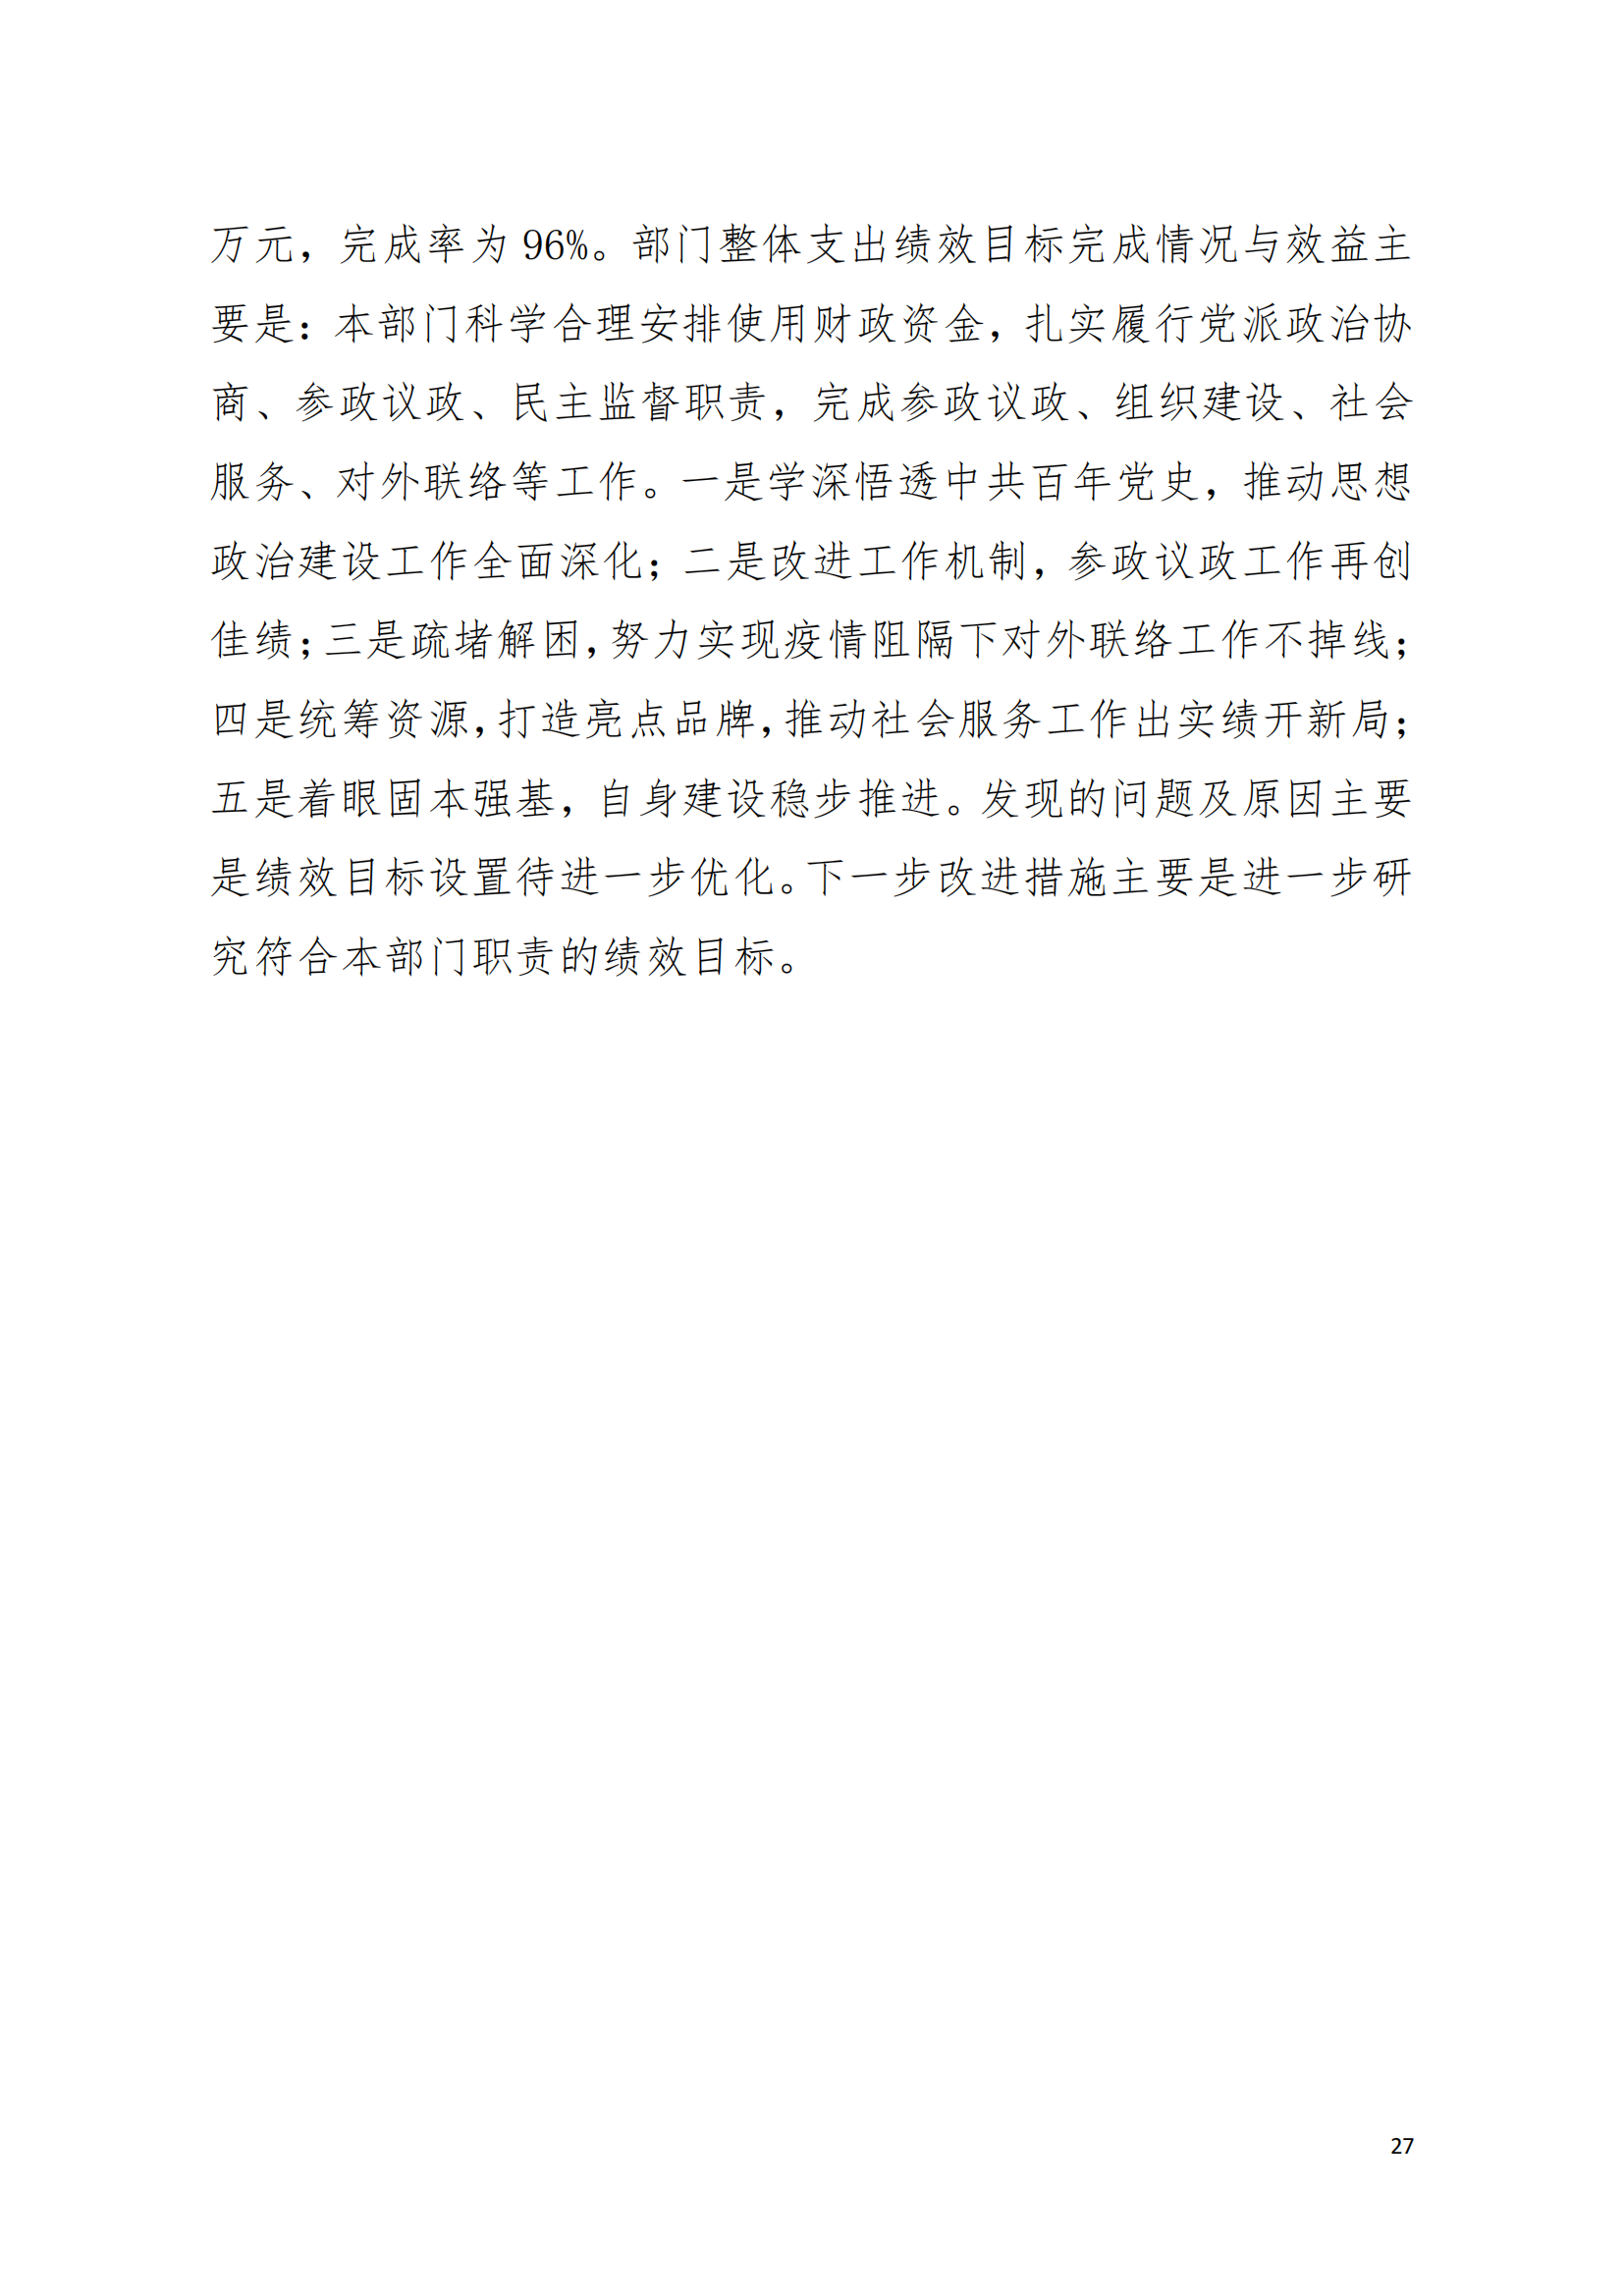 2021年中国致公党广东省委员会部门决算（0706更新）_26.png